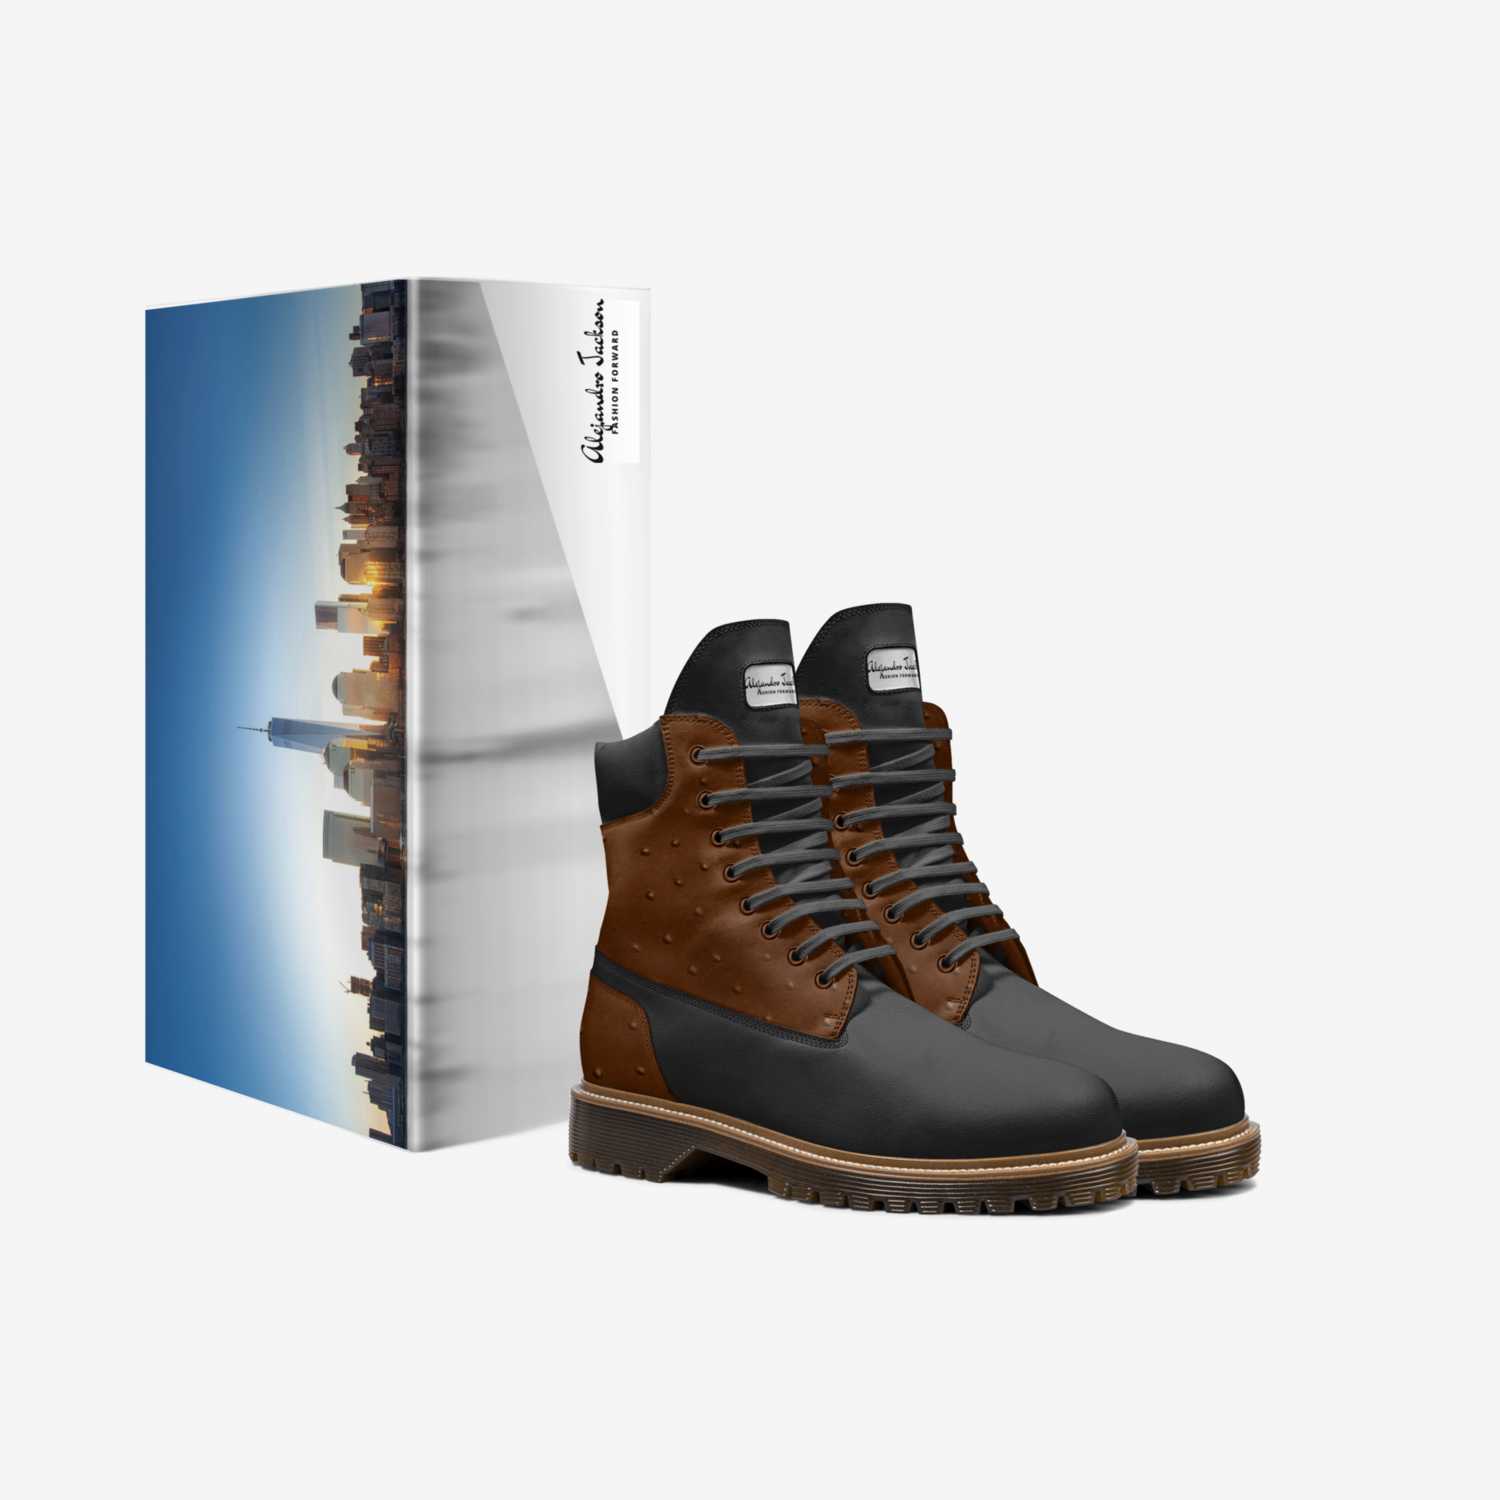 Alejandro Jackson custom made in Italy shoes by Alejandro Isaiah Gonzalez | Box view